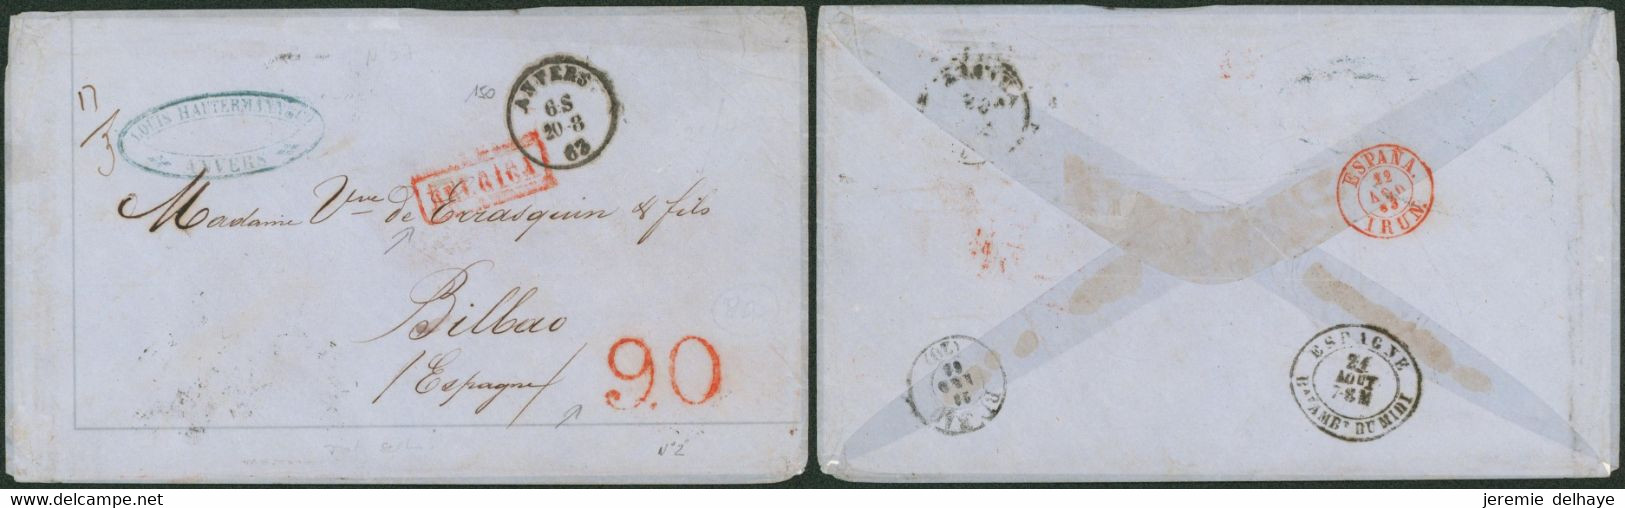 L. Non Affranch. Pesante (17g, 3 Ports) Expédiée De Anvers 20/8/1863 > Bilbao (Espagne) + Griffe Rouge Encadrée BELGICA - Rural Post